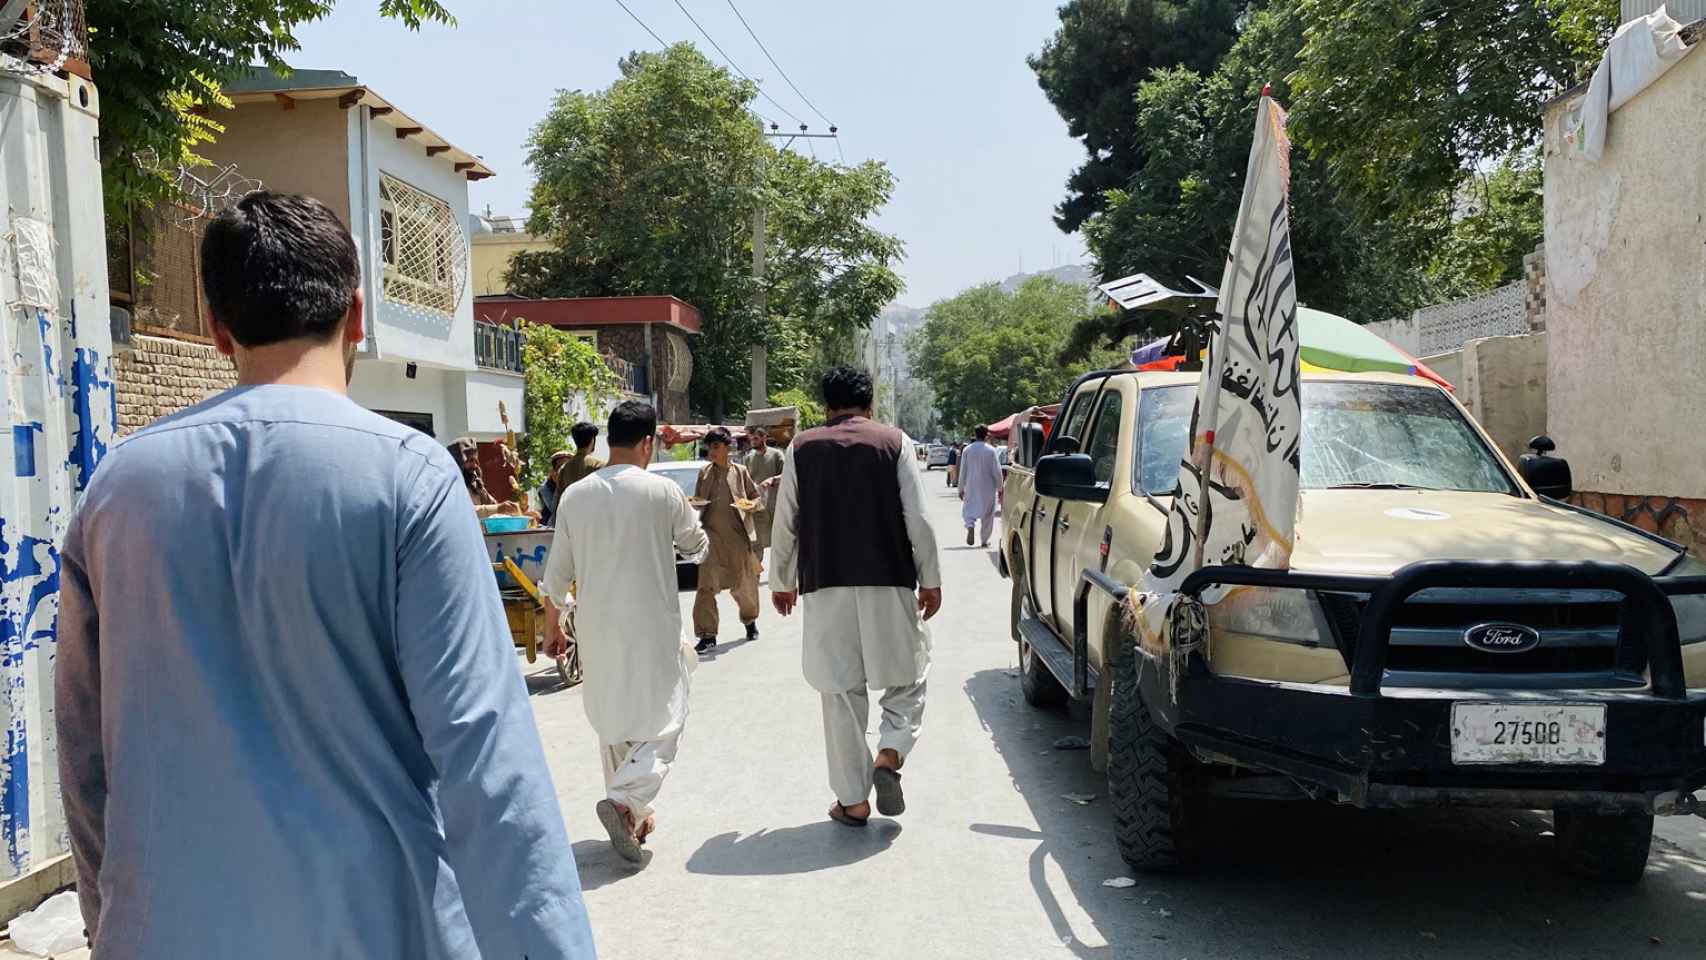 La bandera de los talibanes en primer término en este vehículo patrulla.